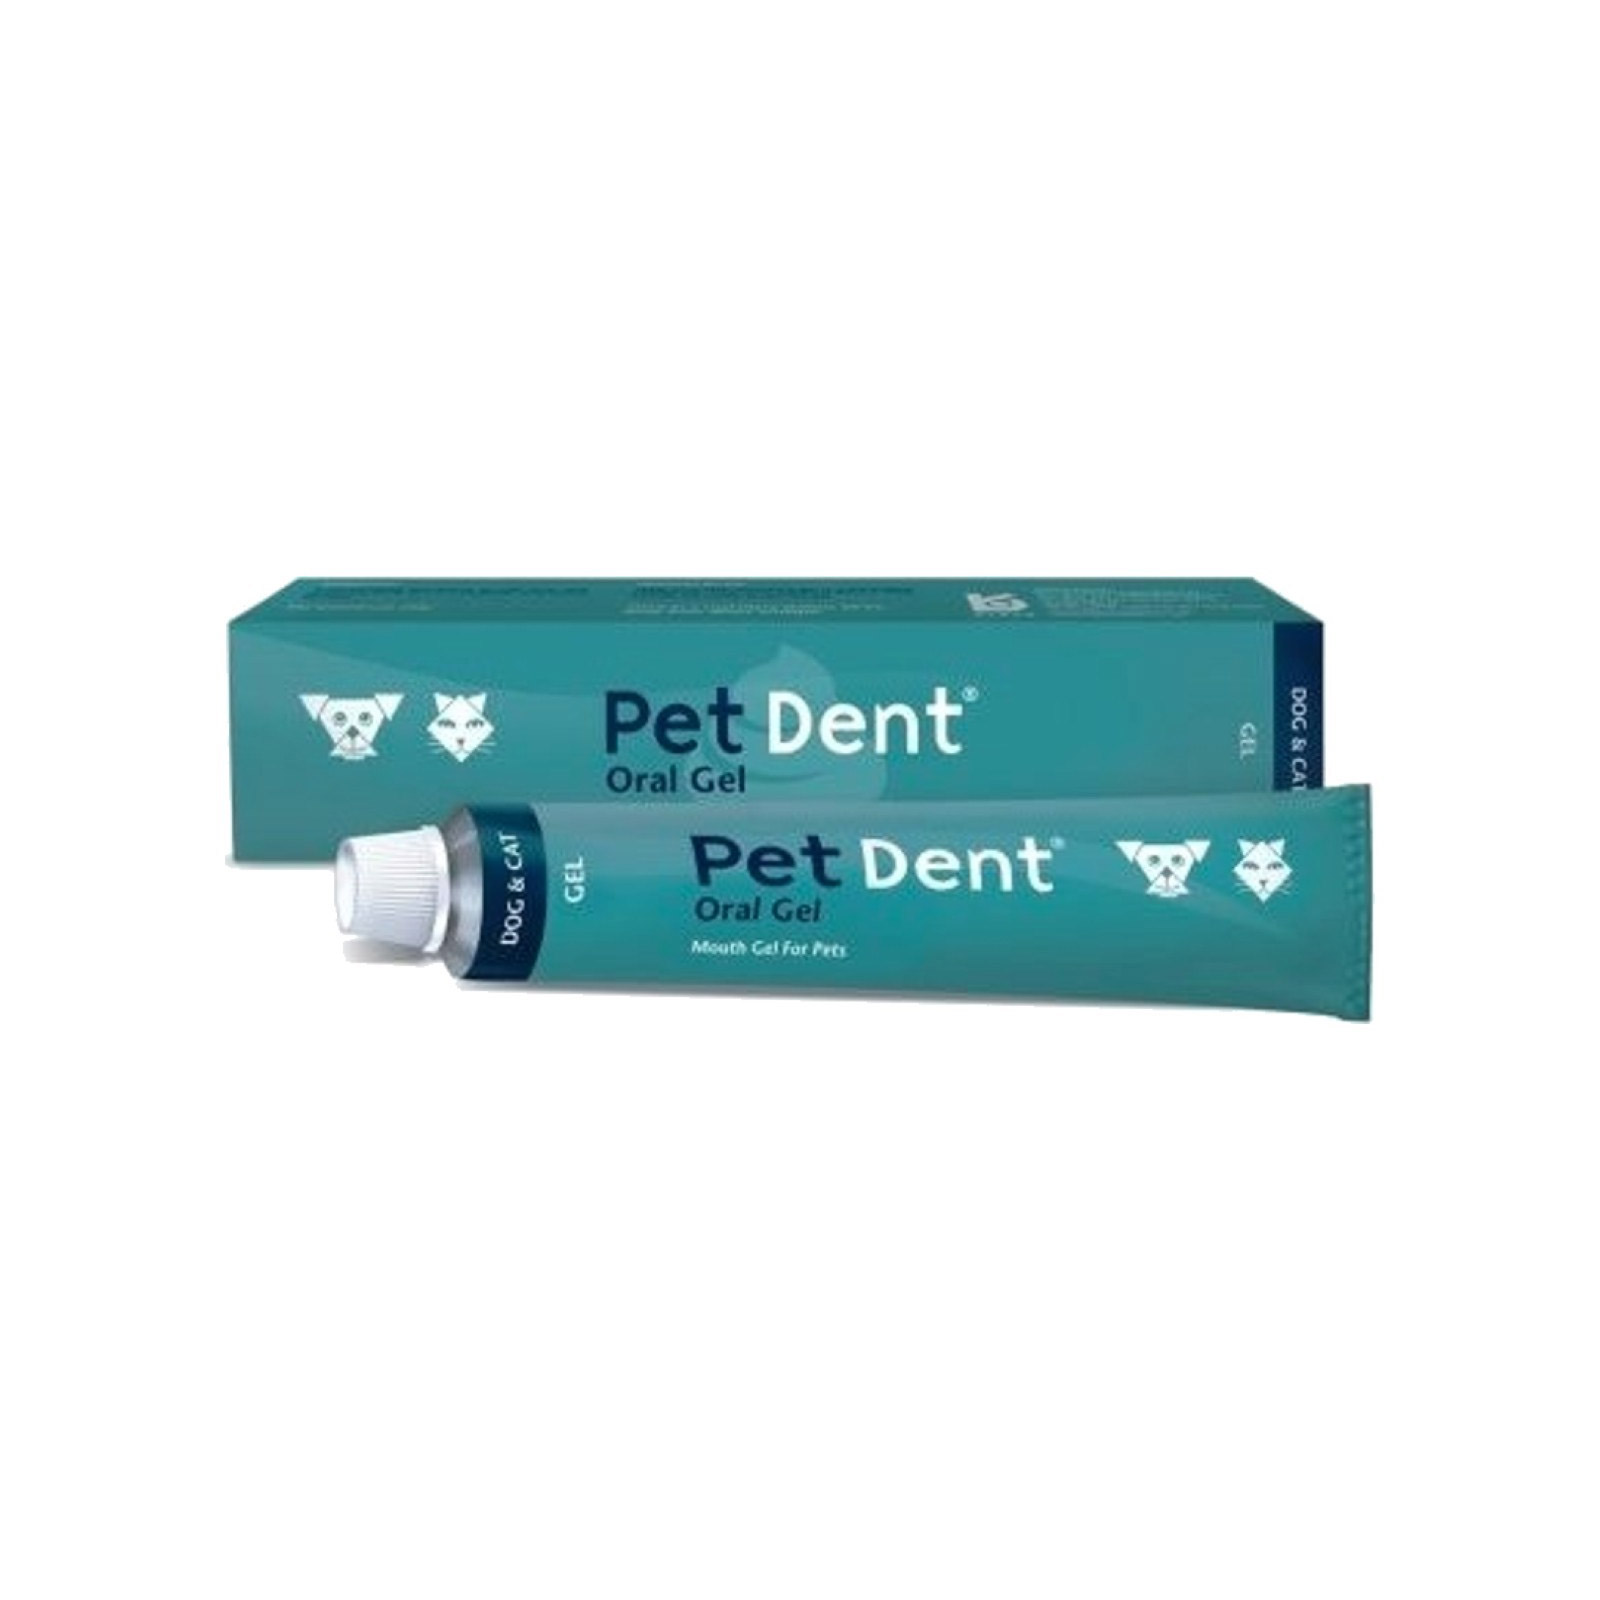 

Pet Dent Oral Gel 60g 1 Pack